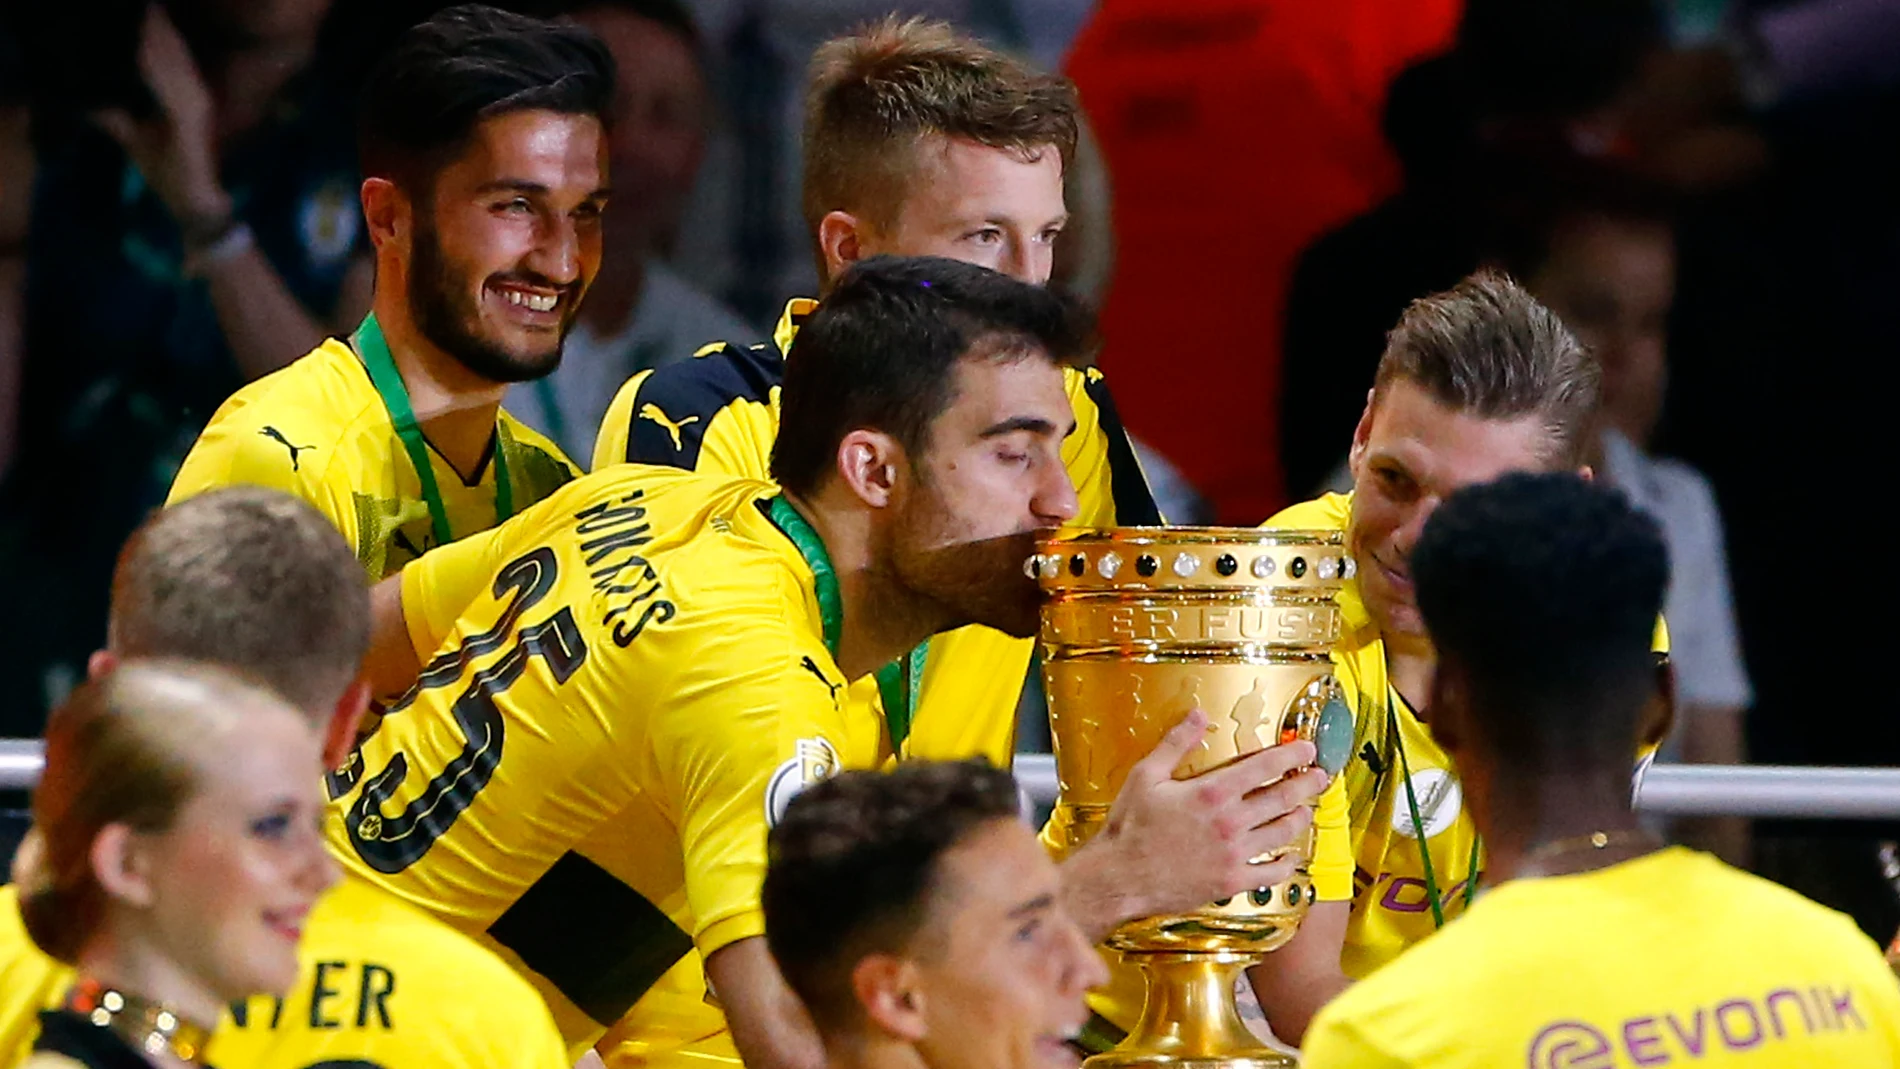 Los jugadores del Borussia Dortmund celebran su victoria en la Copa